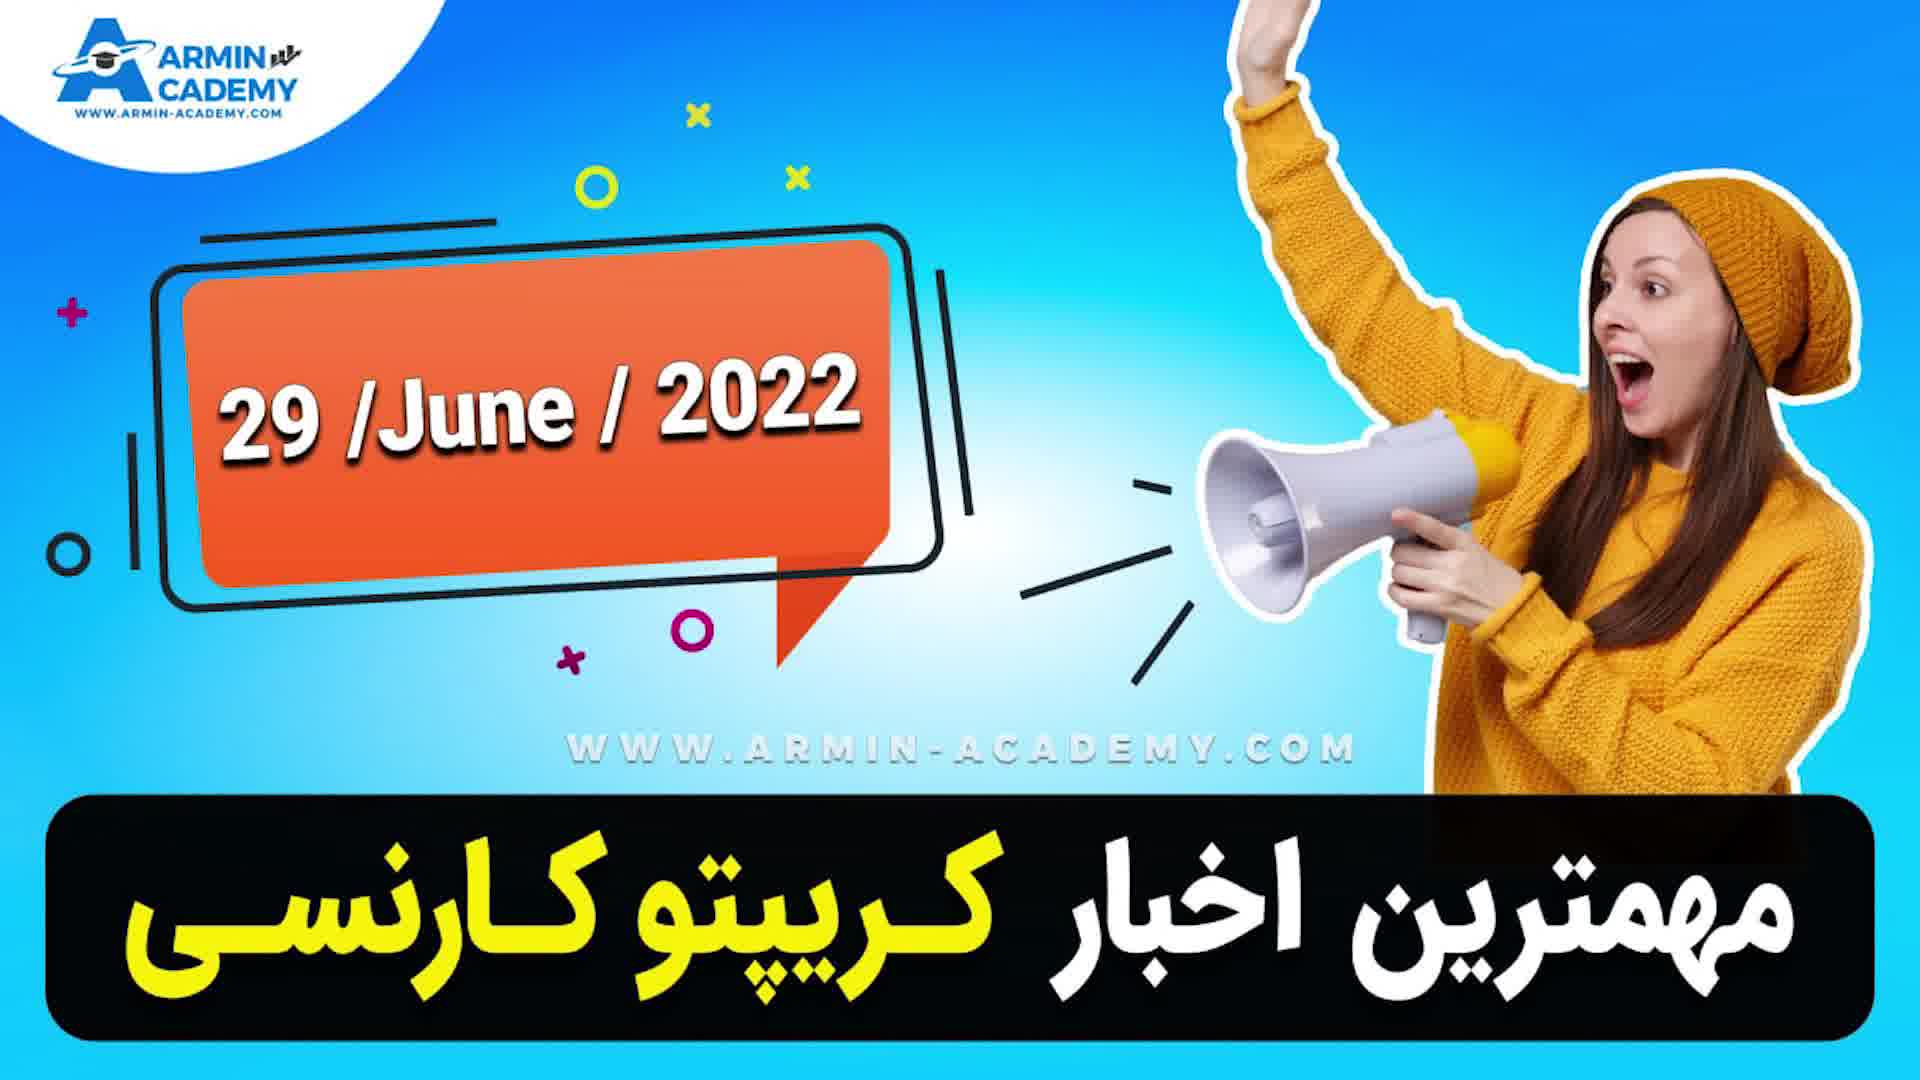 اخبار روز ارز دیجیتال - مهمترین  خبرهای روز ارزدیجیتال - 29/6/2022